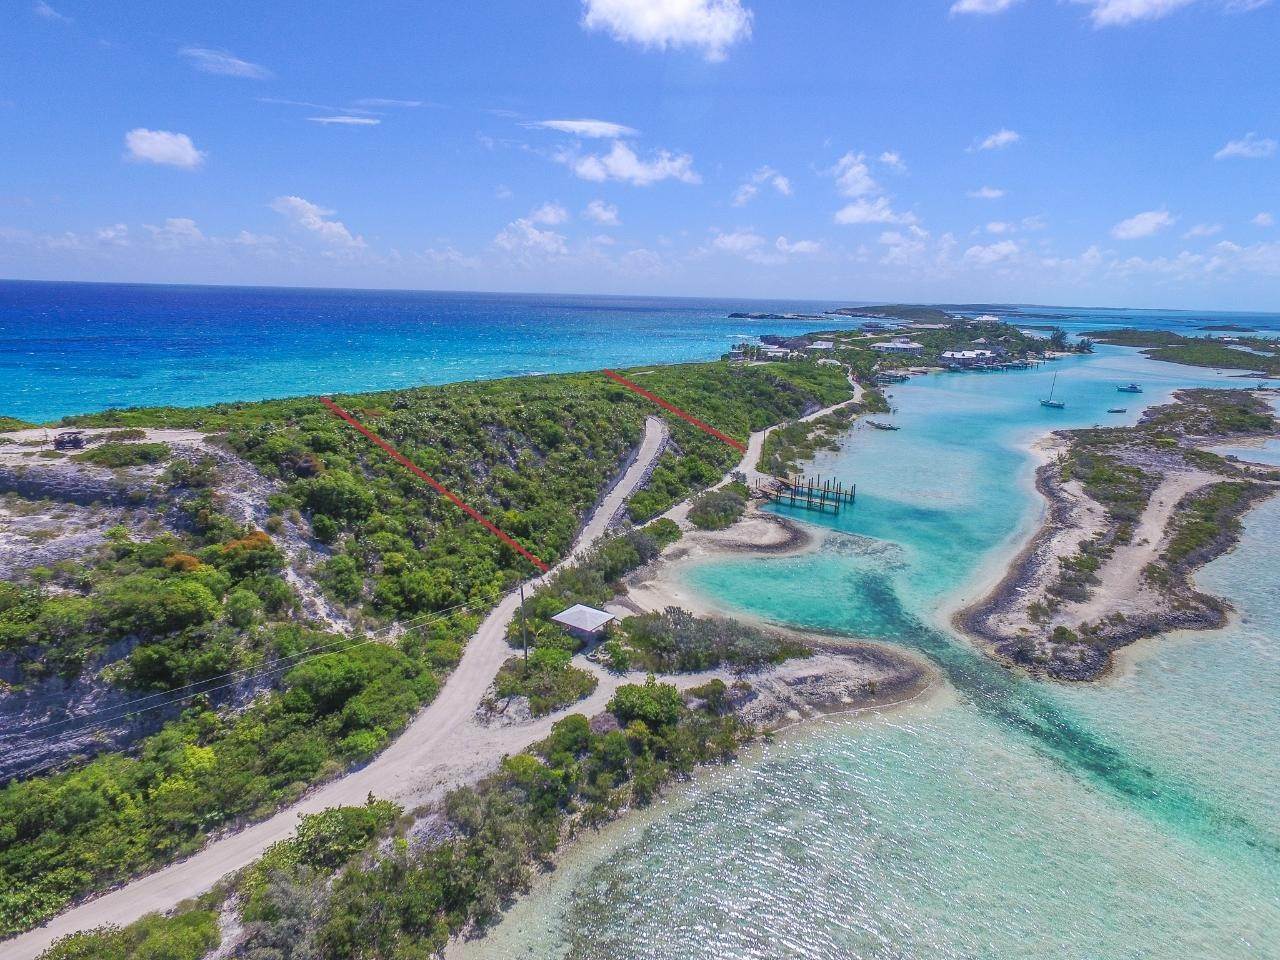 8. Lots / Acreage for Sale at Staniel Cay, Exuma Cays, Exuma, Bahamas